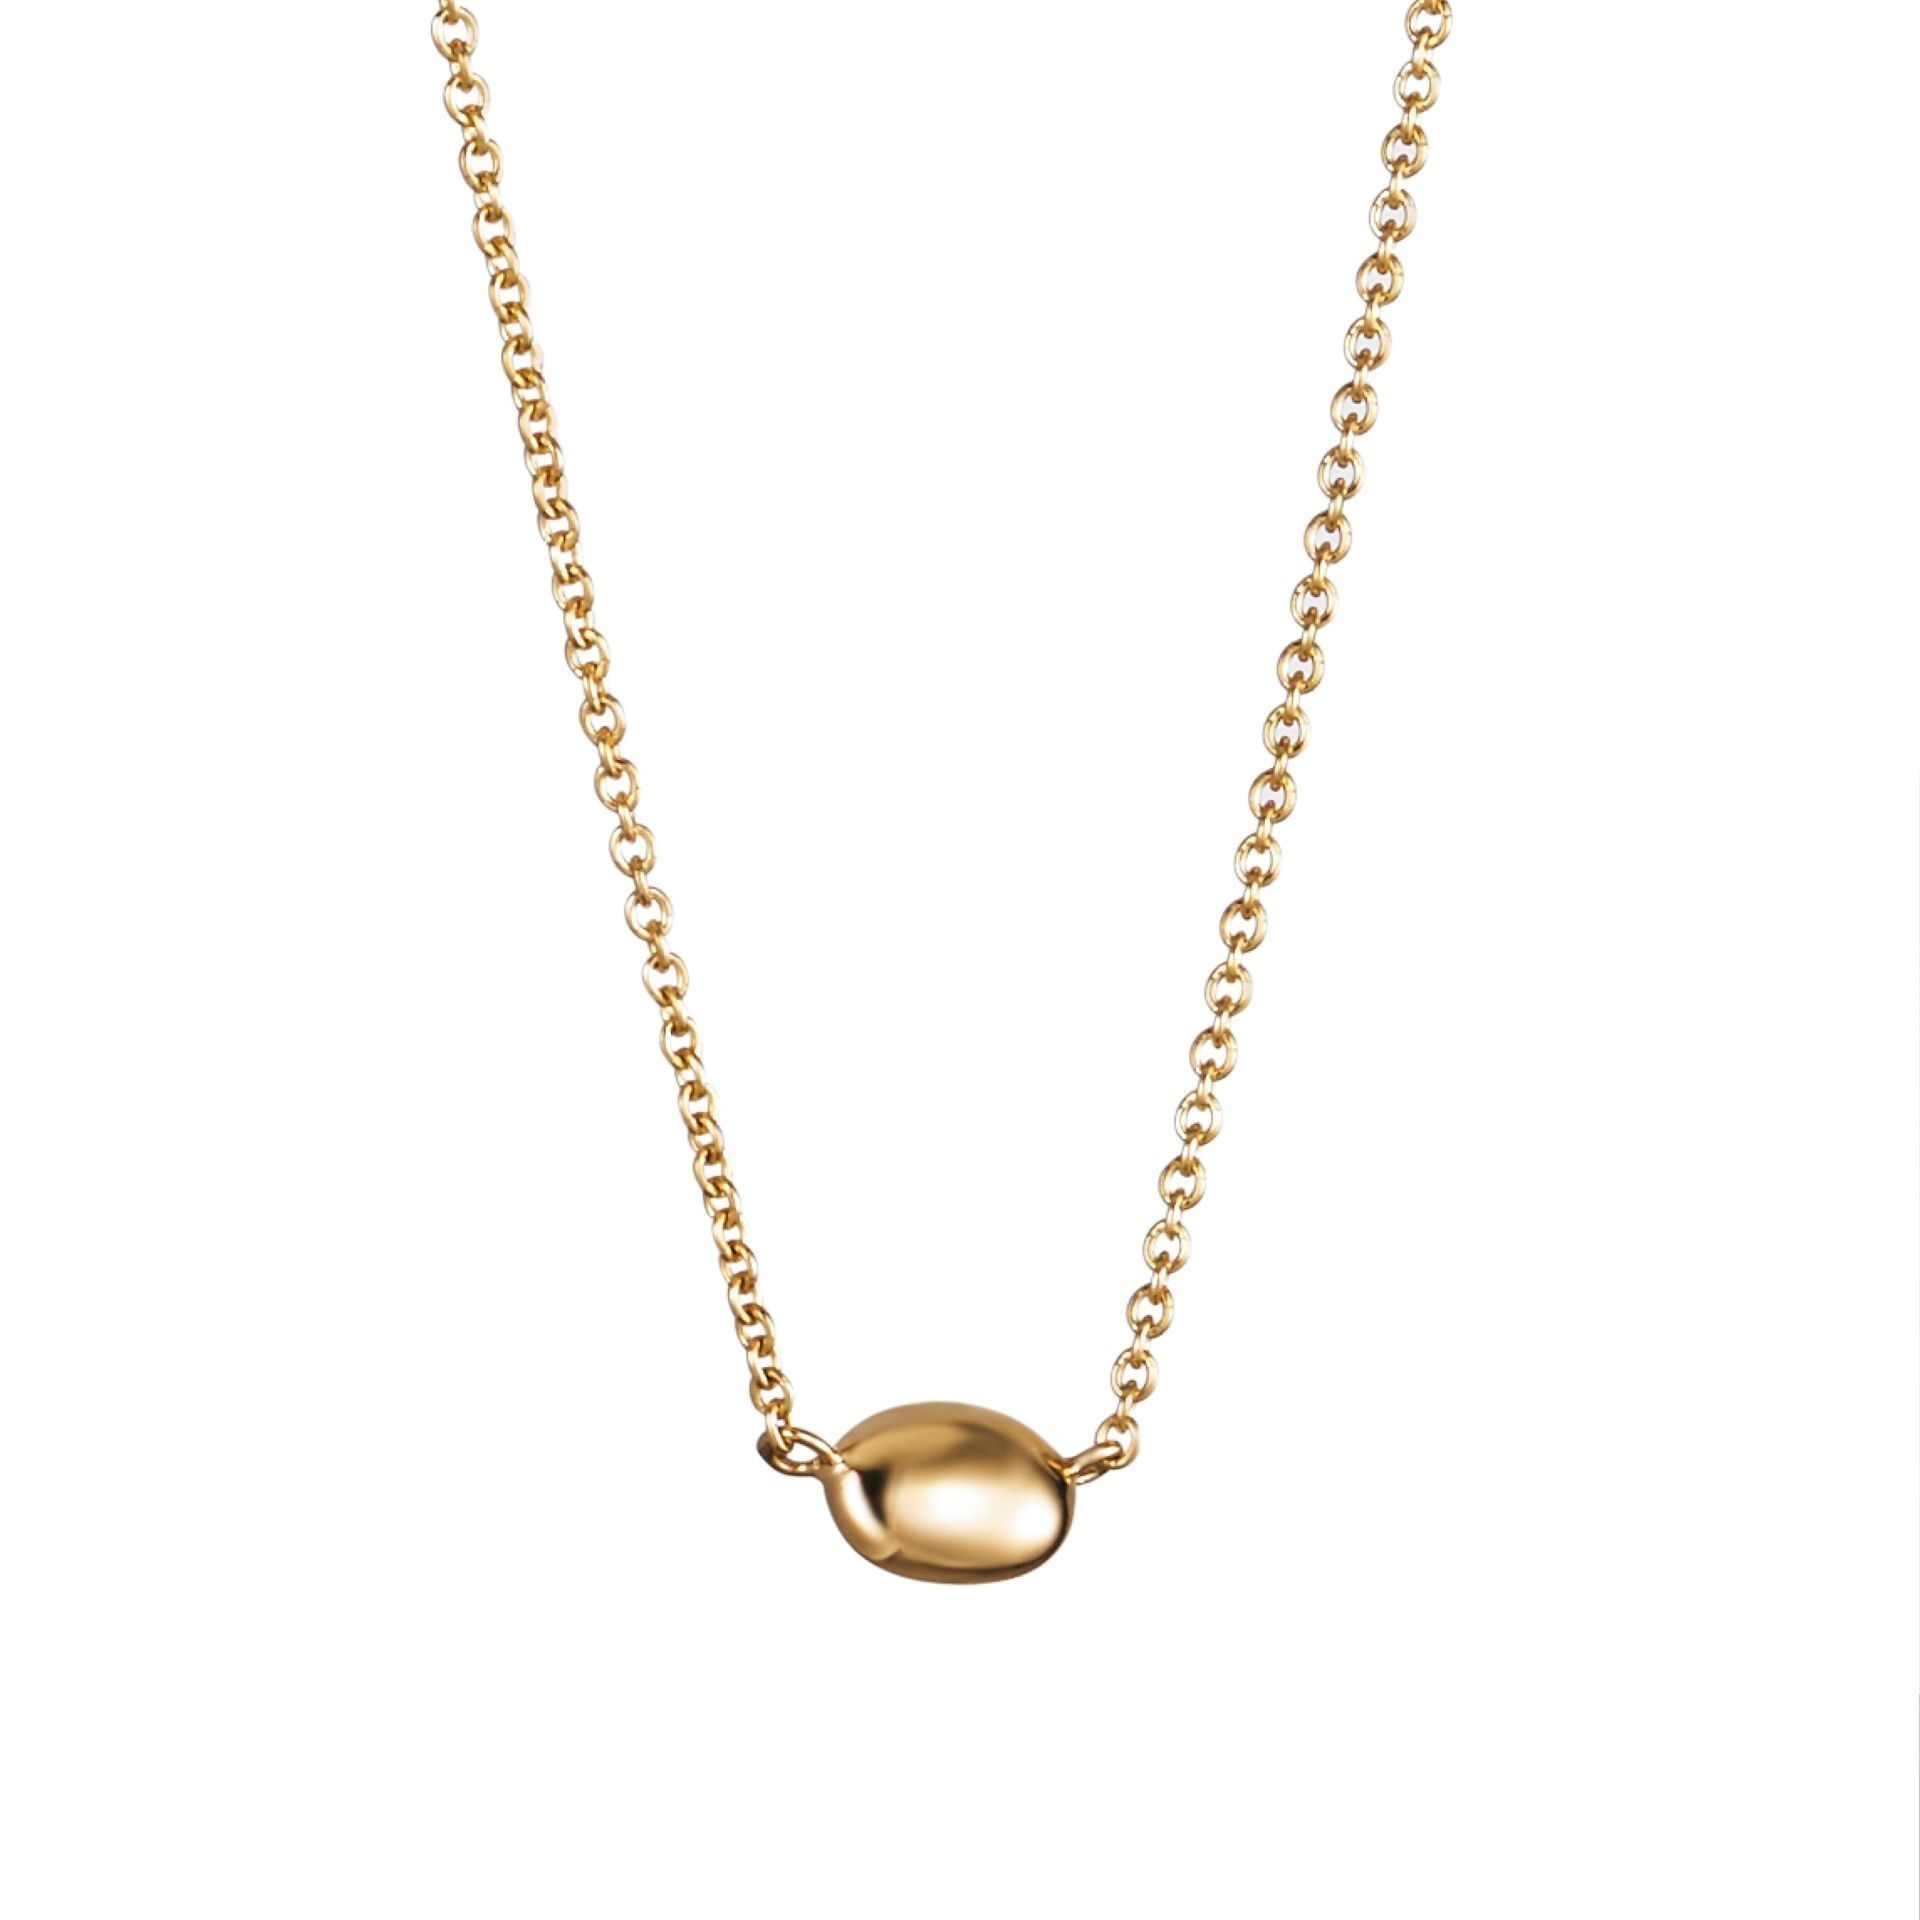 Efva Attling Love Bead Necklace - Gold 40 CM - GULD